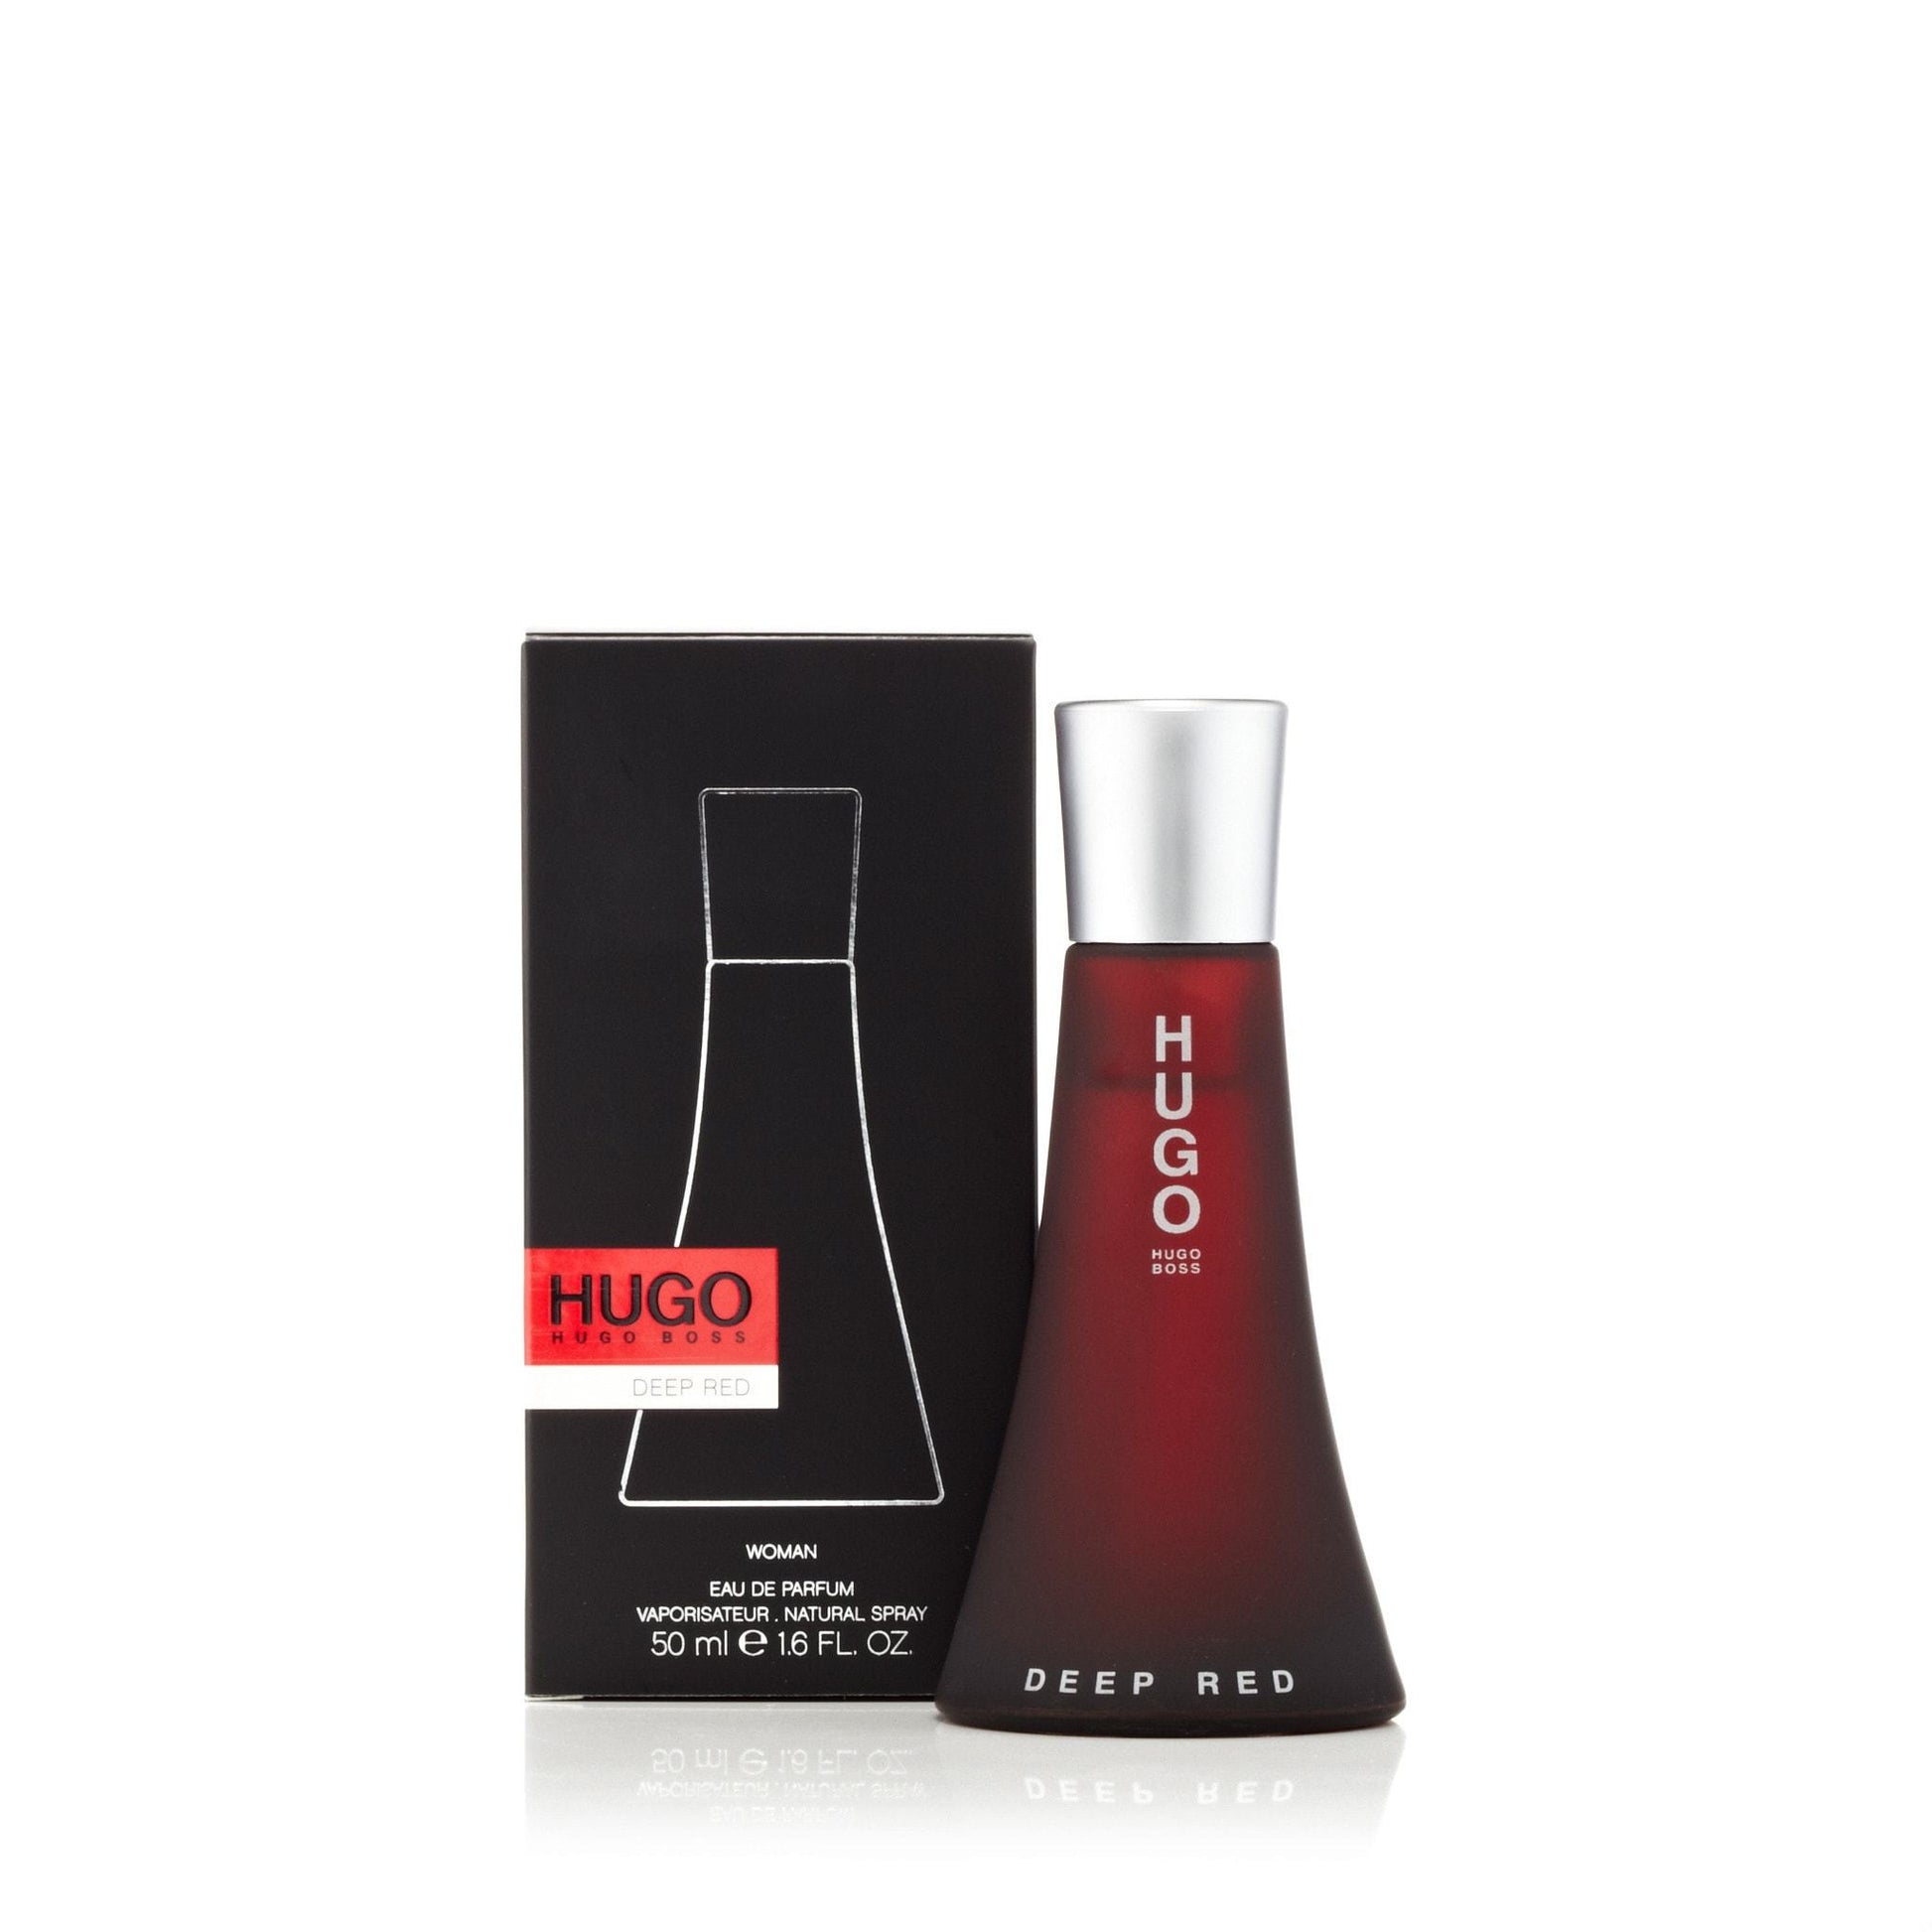 Hugo Deep Red Eau de Parfum Spray for Women by Hugo Boss, Product image 4